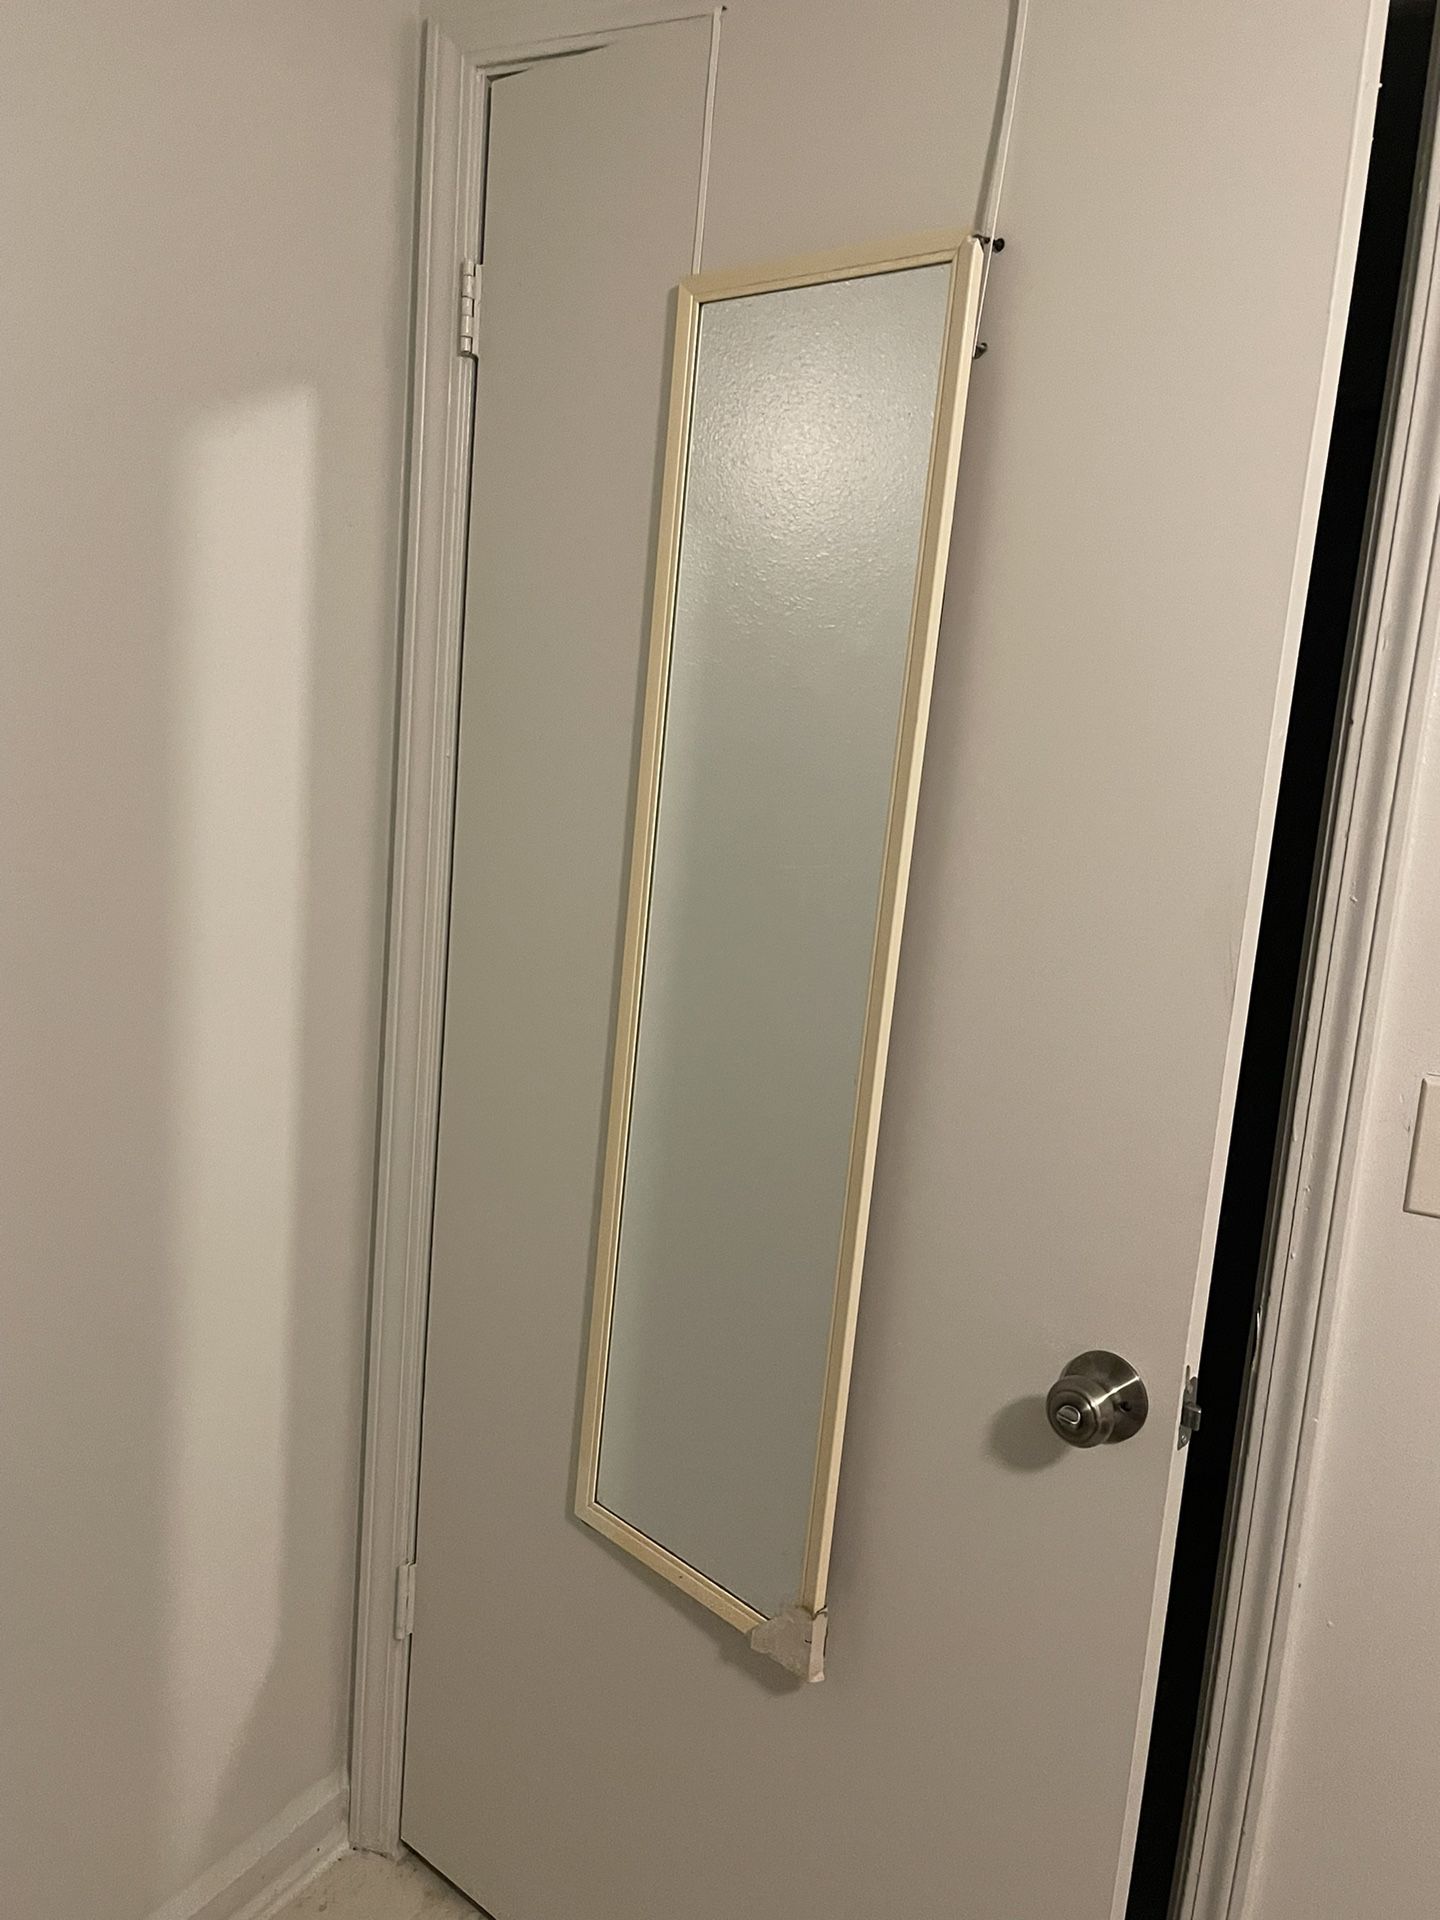 Over the door full length mirror